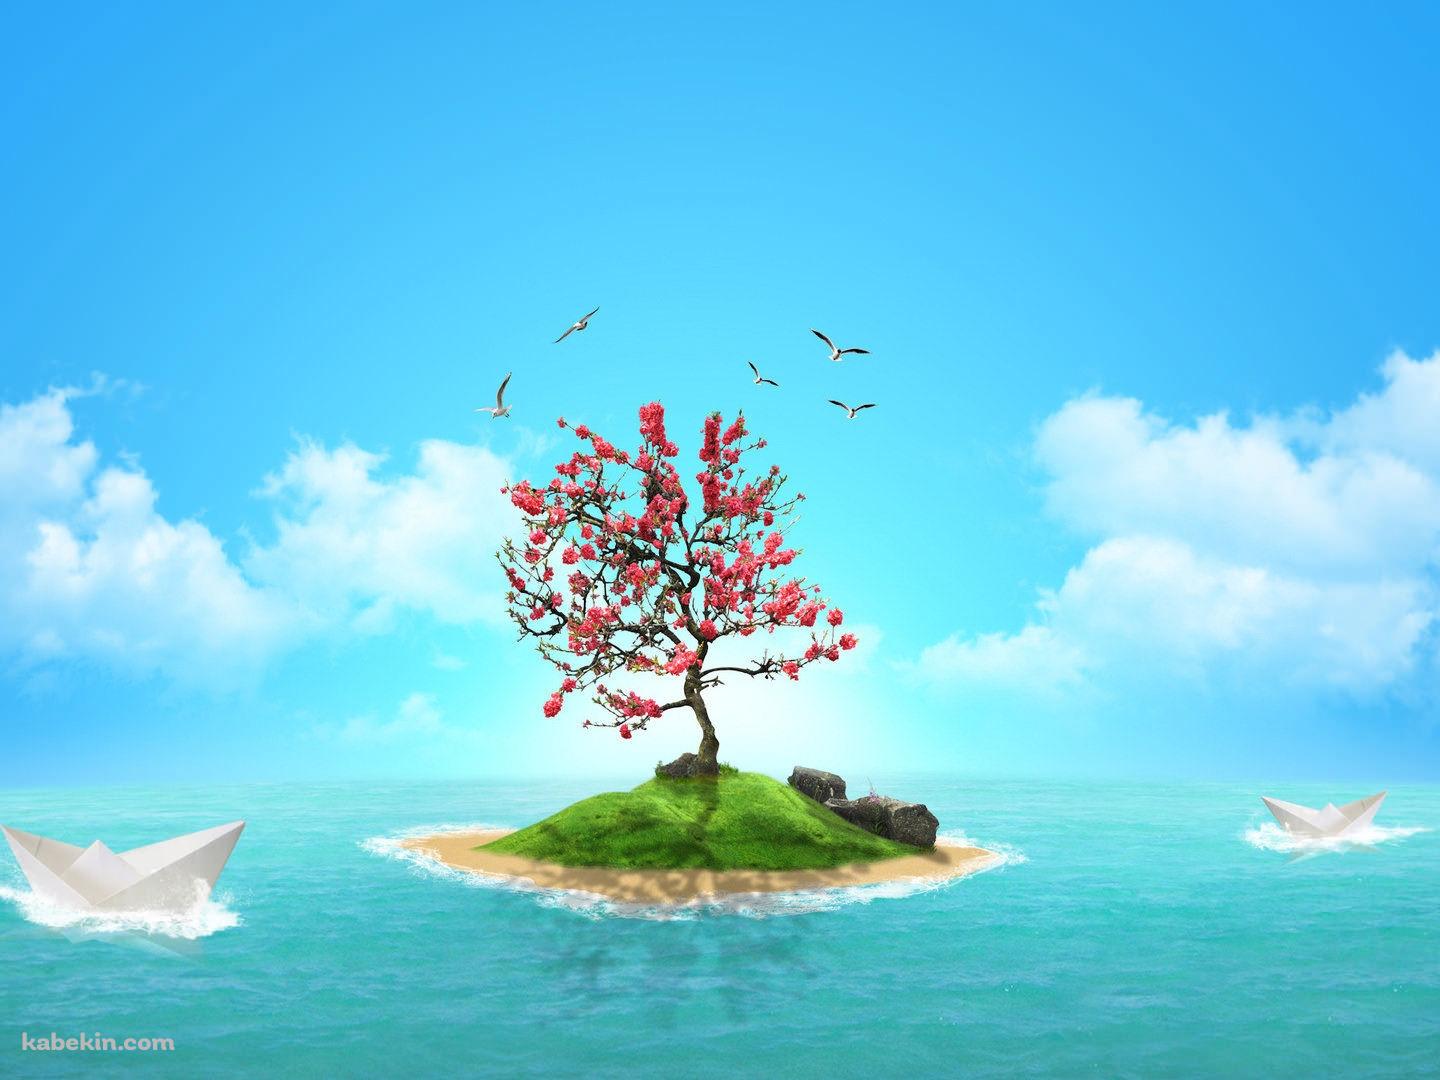 赤い木が立つ孤島の壁紙(1440px x 1080px) 高画質 PC・デスクトップ用